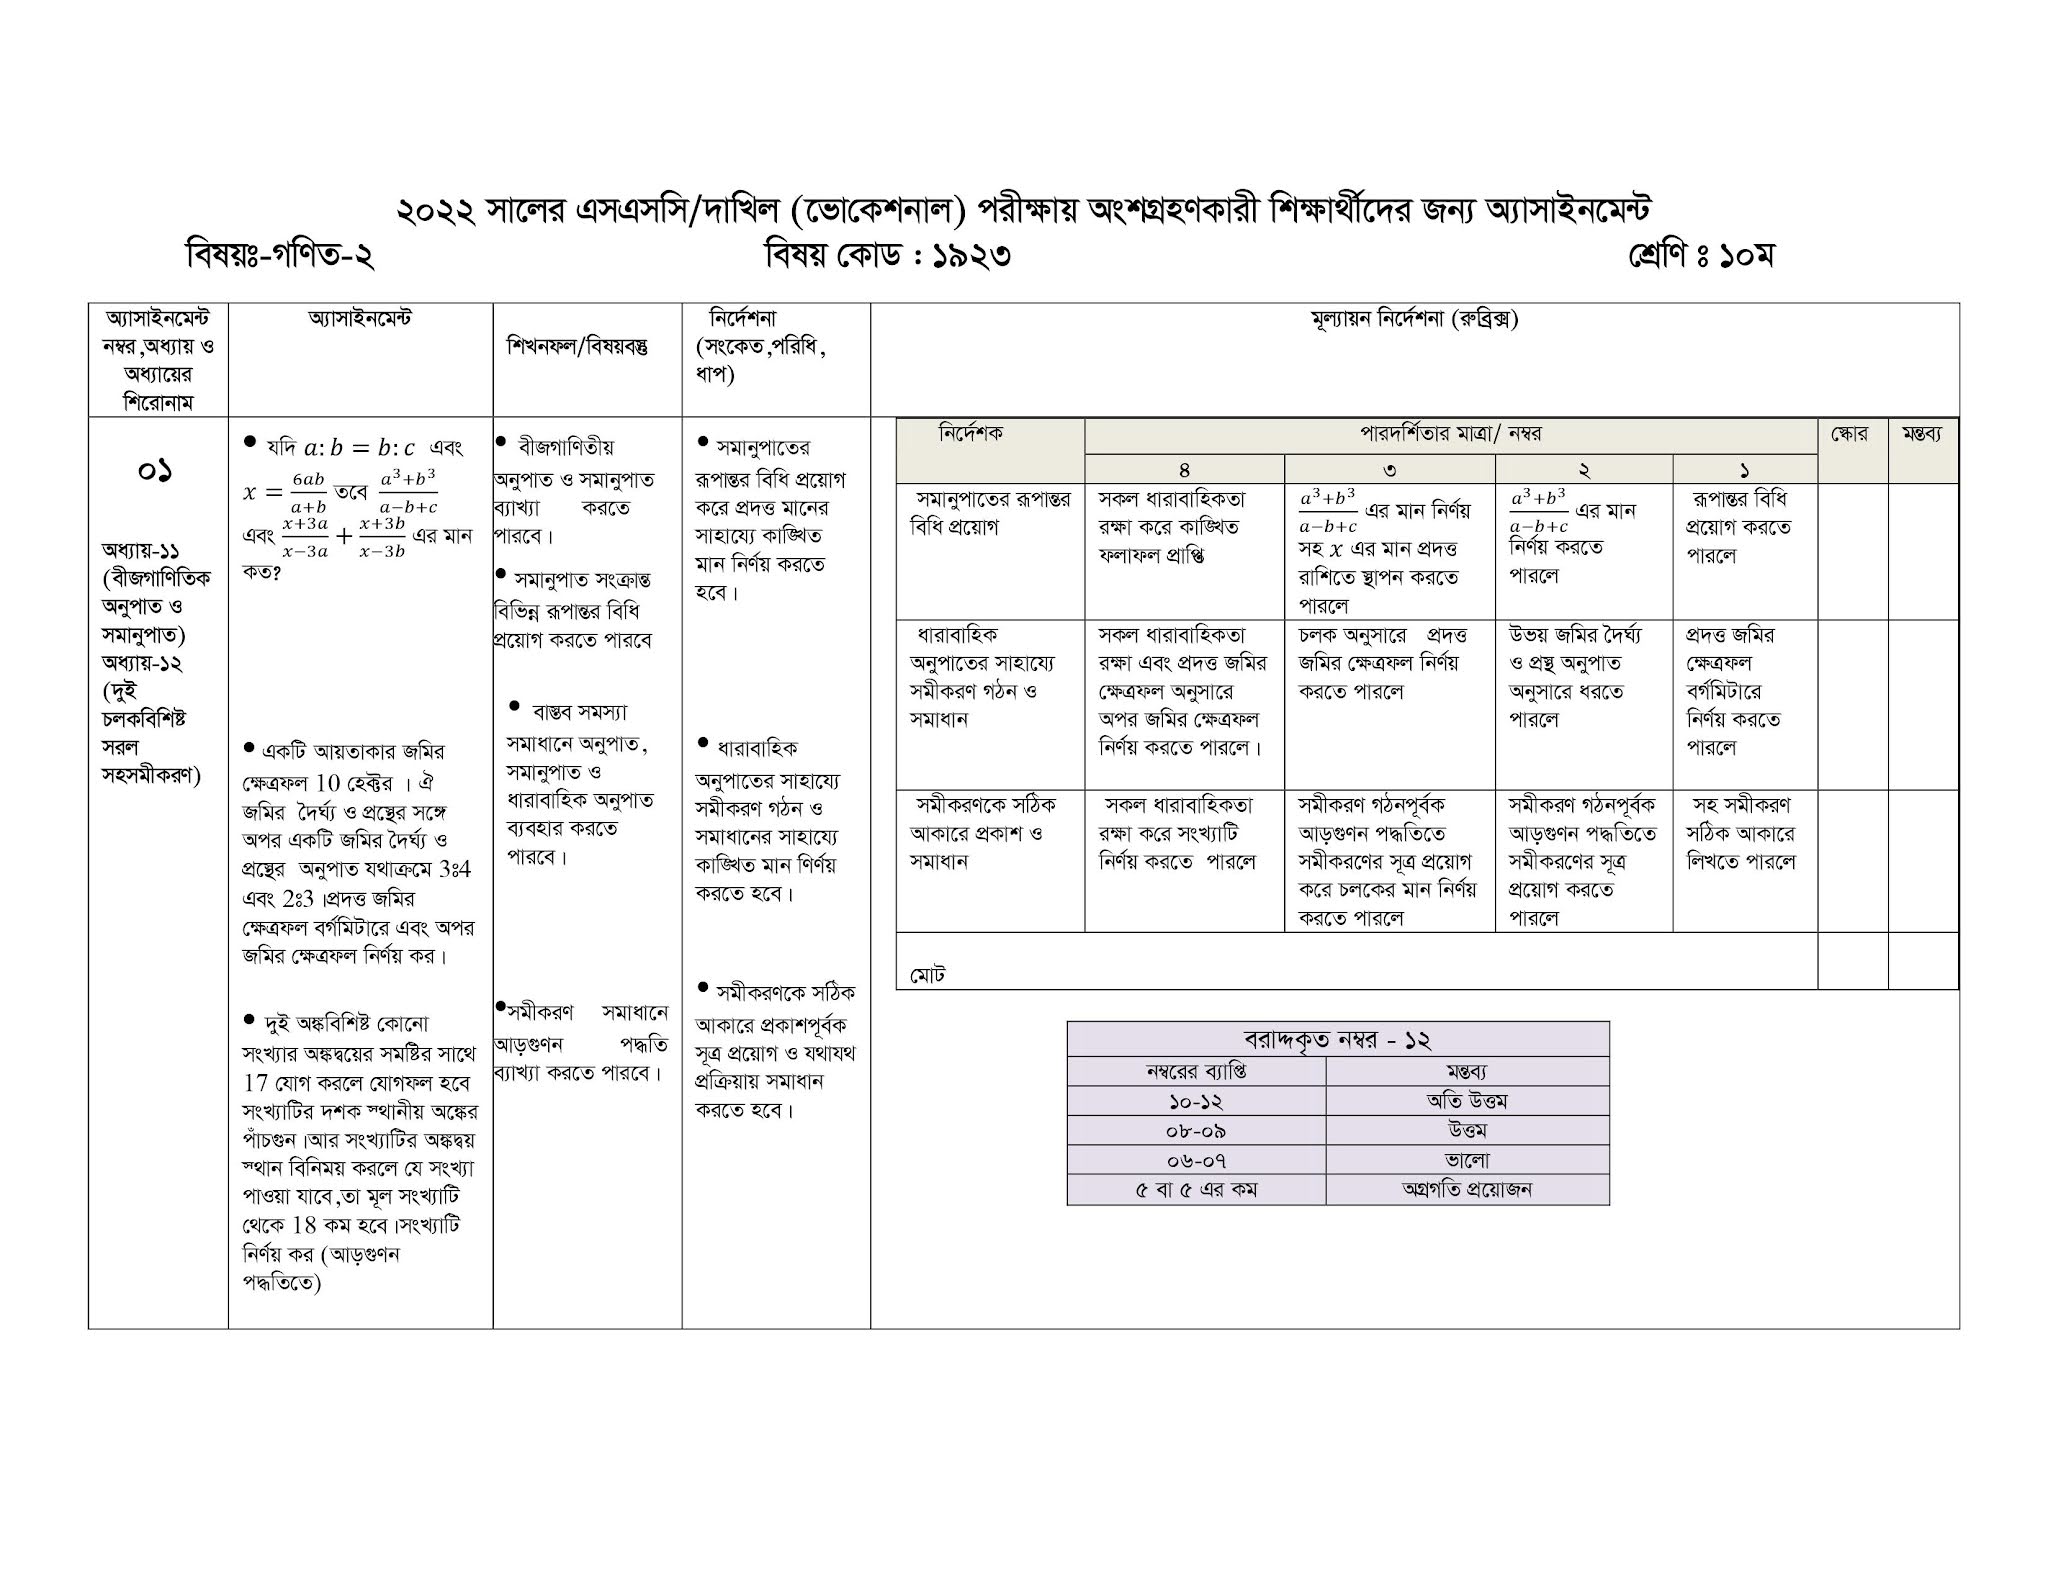 দাখিল ভোকেশনাল ৩য় সপ্তাহের এসাইনমেন্ট ২০২২ | Dakhil vocational 3rd week assignment question and answer 2022